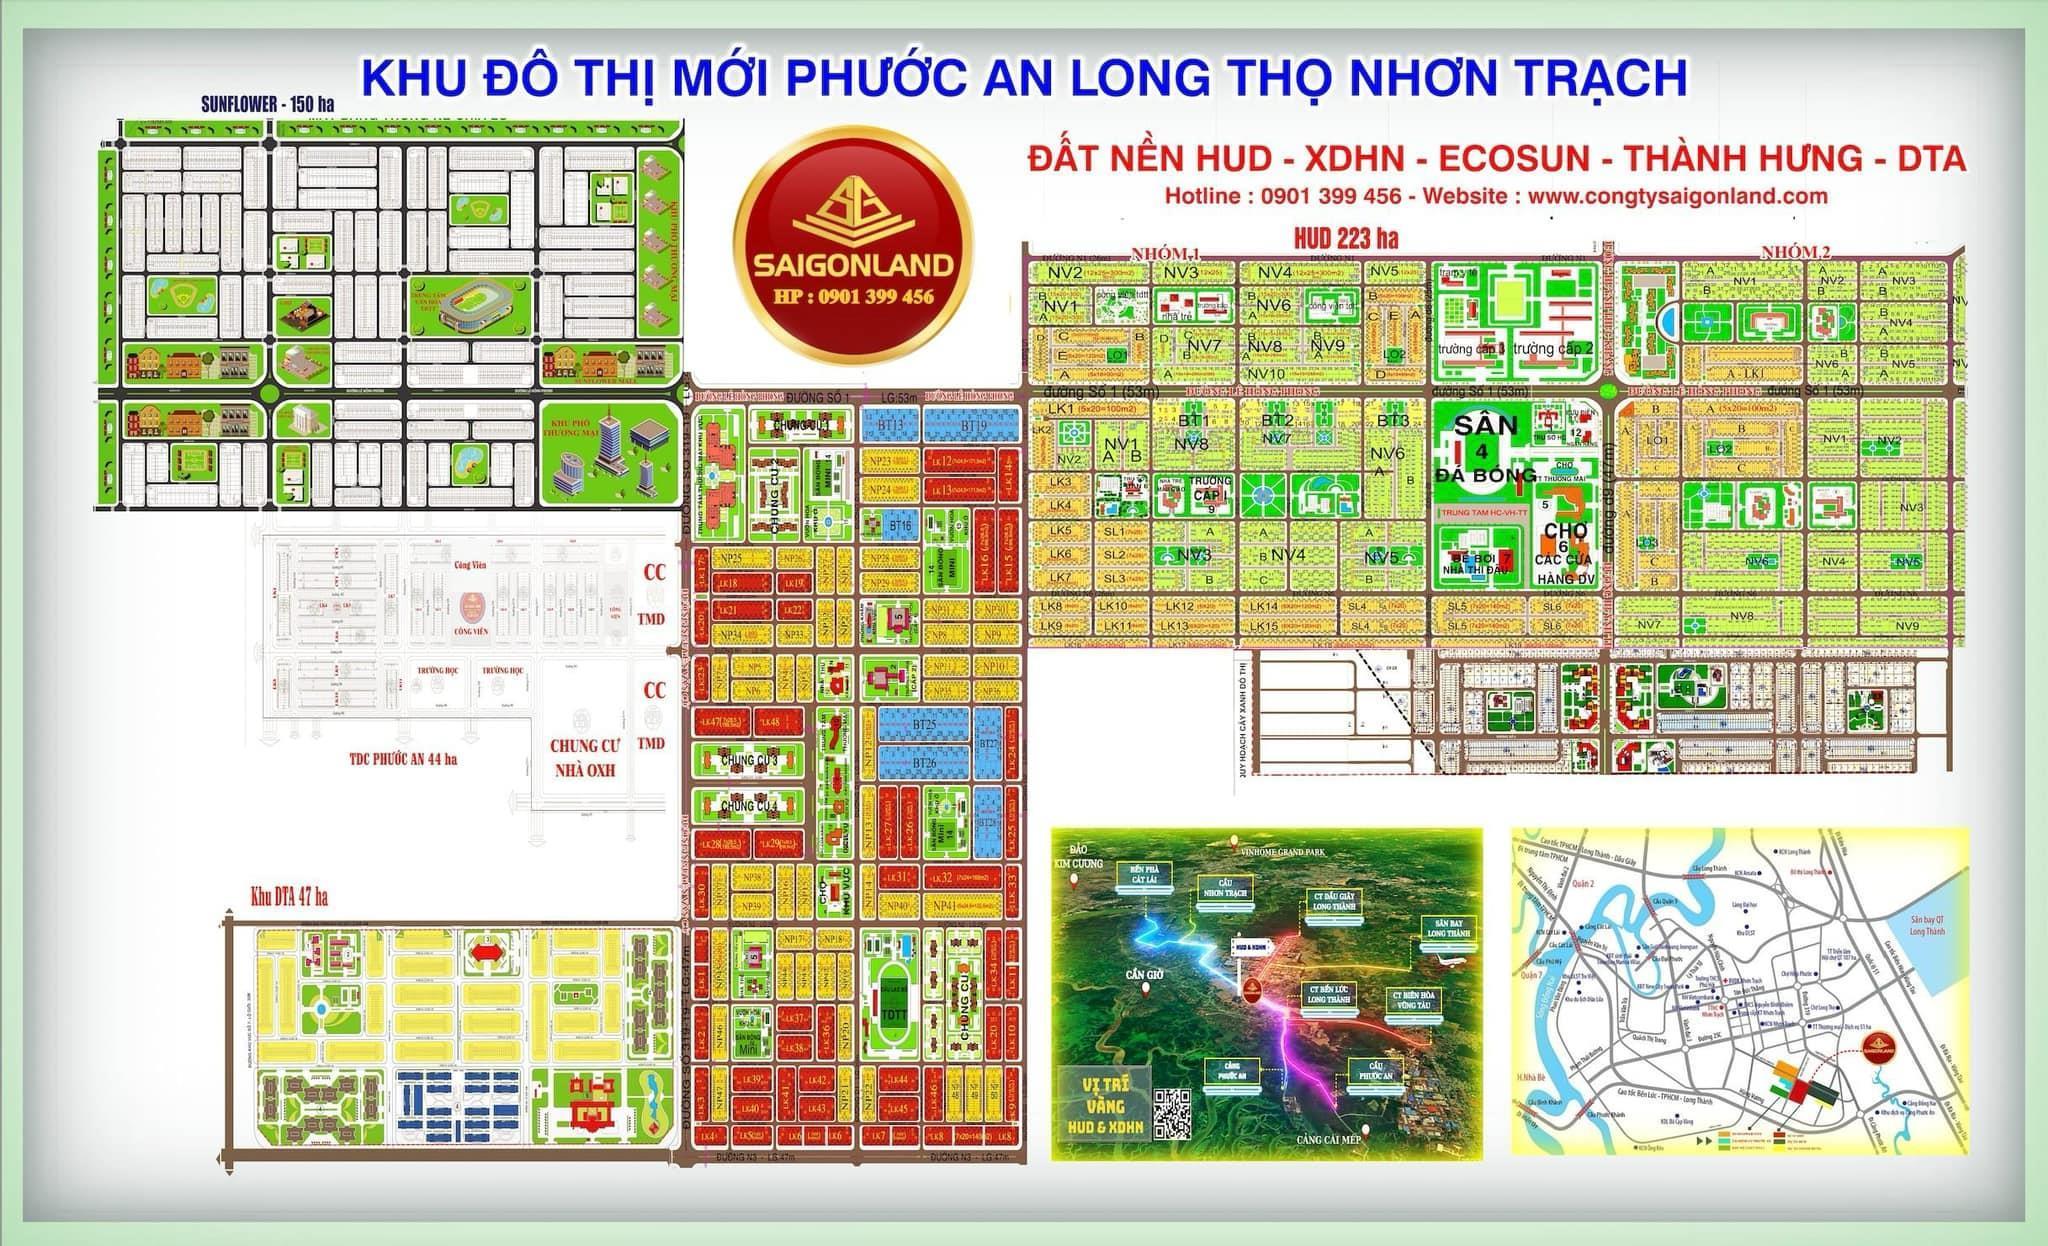 Saigonland Cần bán nền đất sổ sẵn dự án Hud Nhơn Trạch Đồng Nai diện tích 285m2 khu dân cư hiện hữu - Ảnh 3